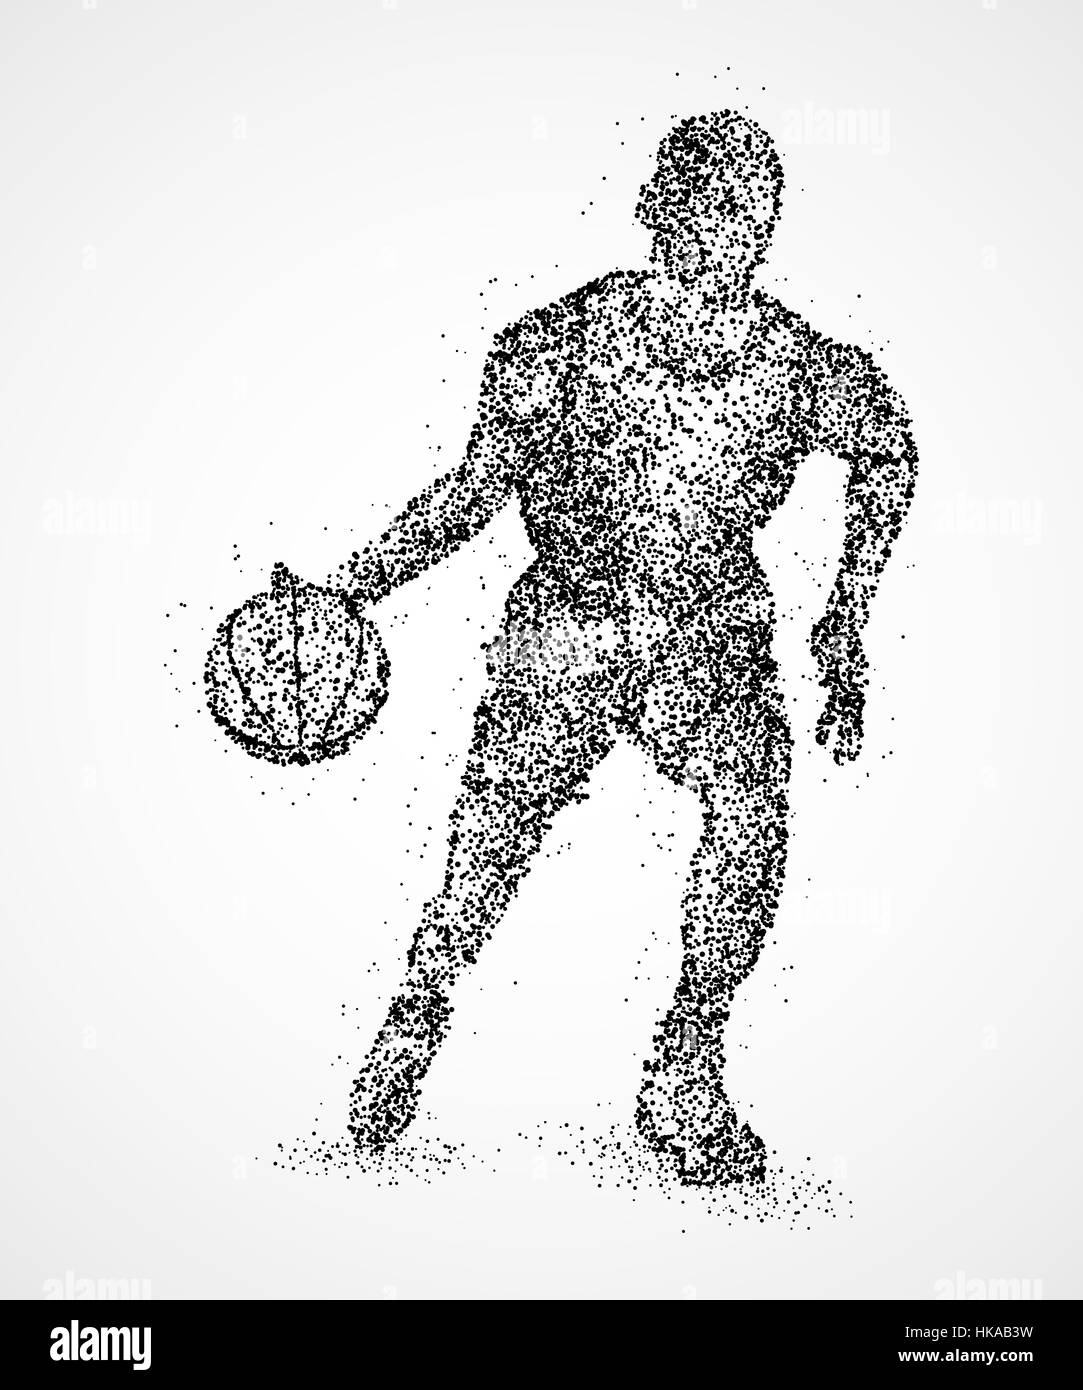 Résumé Le joueur de basket-ball de cercles noirs. Photo illustration. Banque D'Images